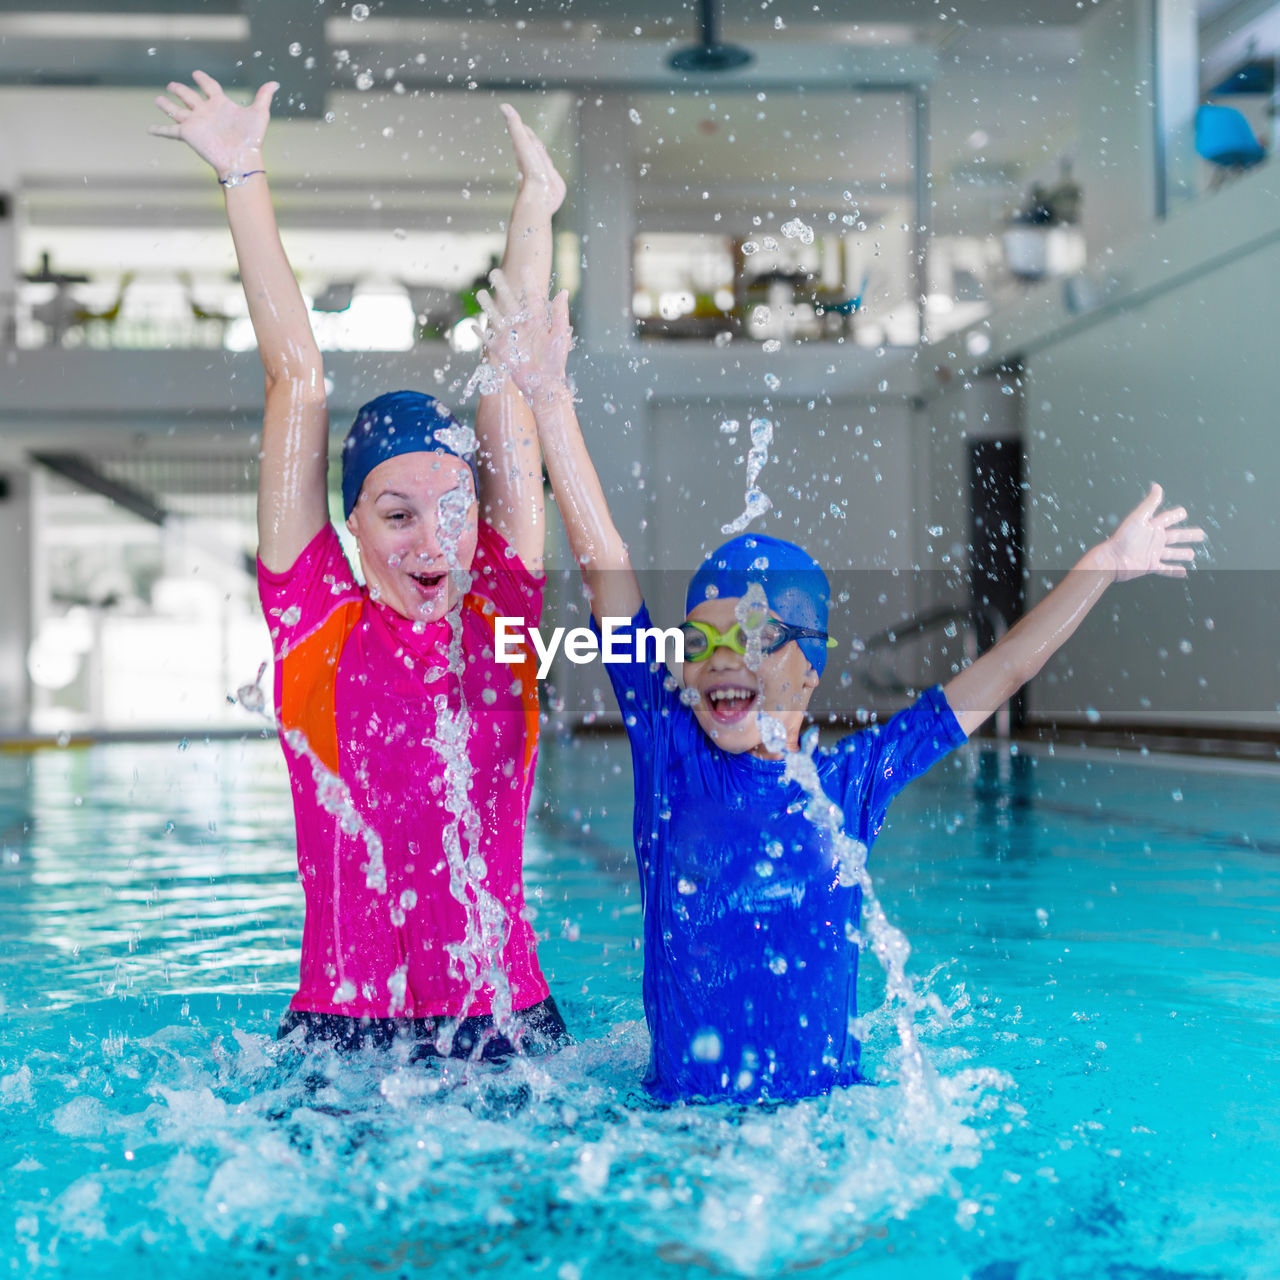 Cheerful young woman splashing water in swimming pool